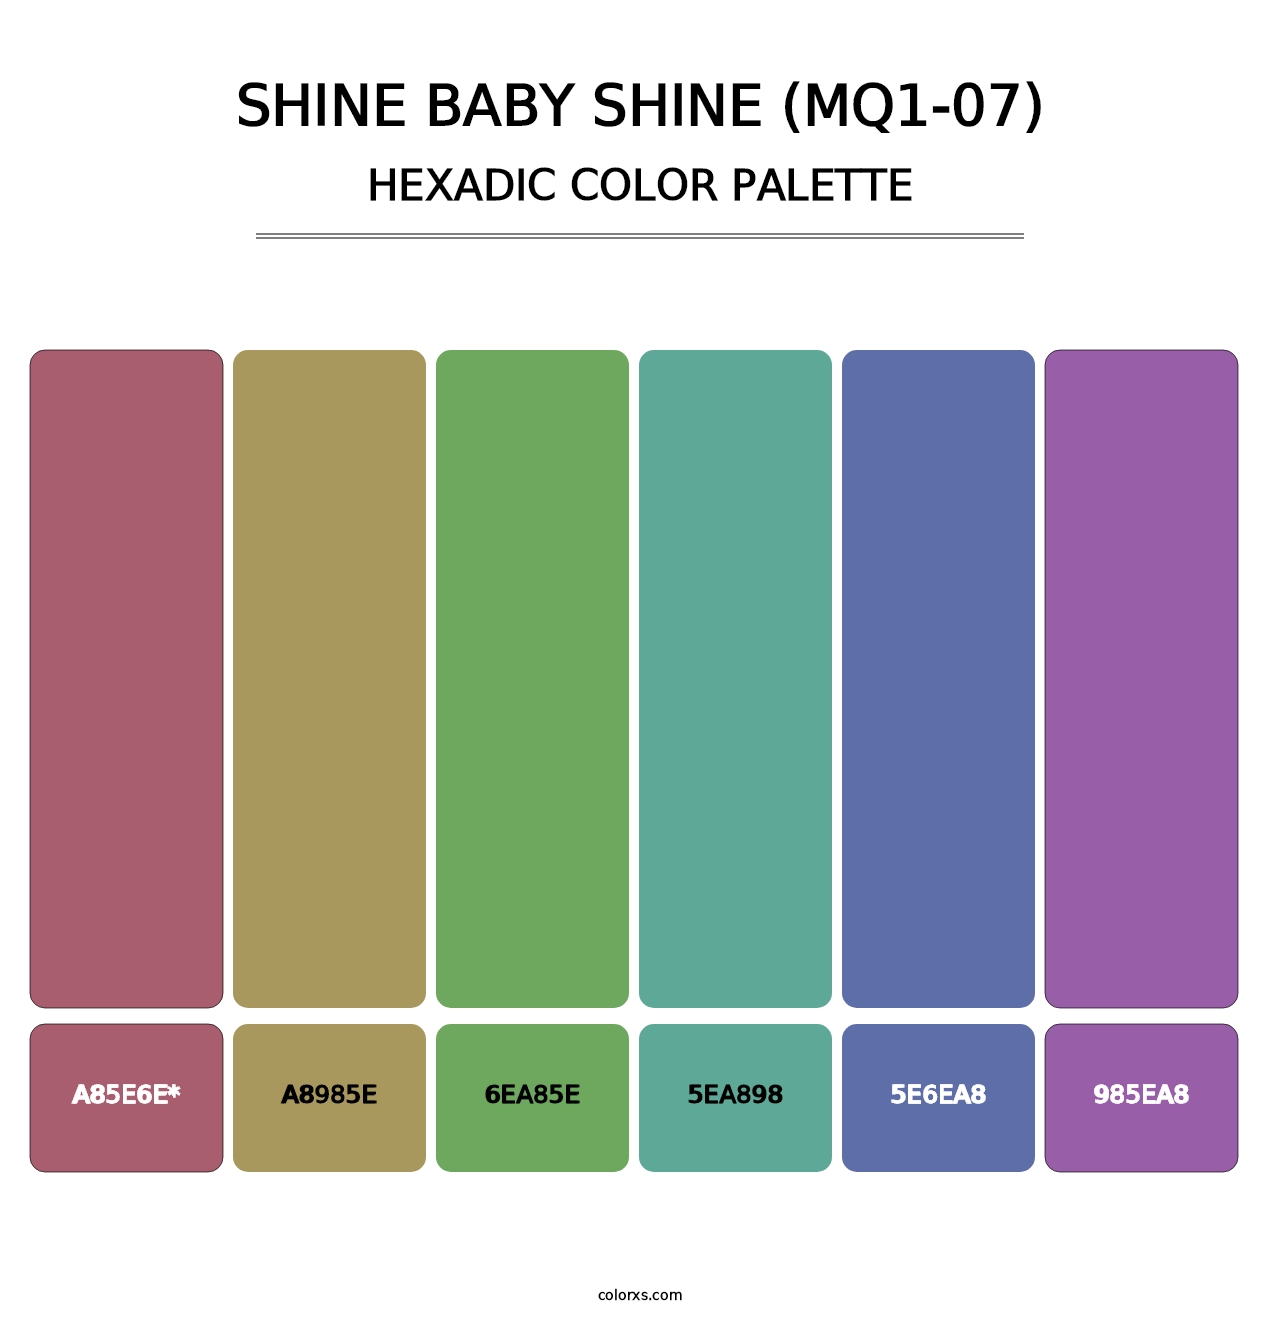 Shine Baby Shine (MQ1-07) - Hexadic Color Palette